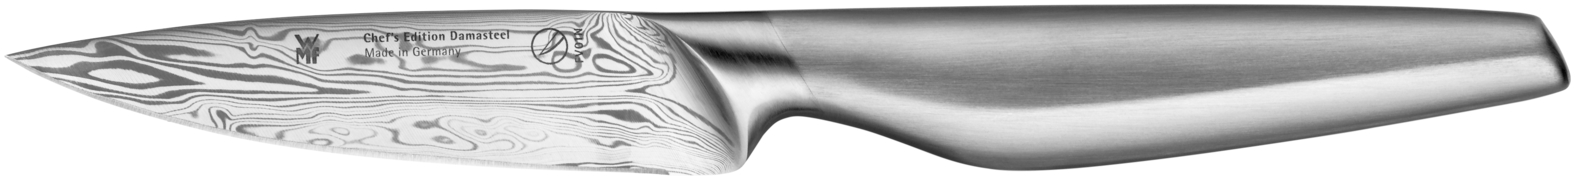 Универсальный нож Chef's Edition Damasteel 10см.